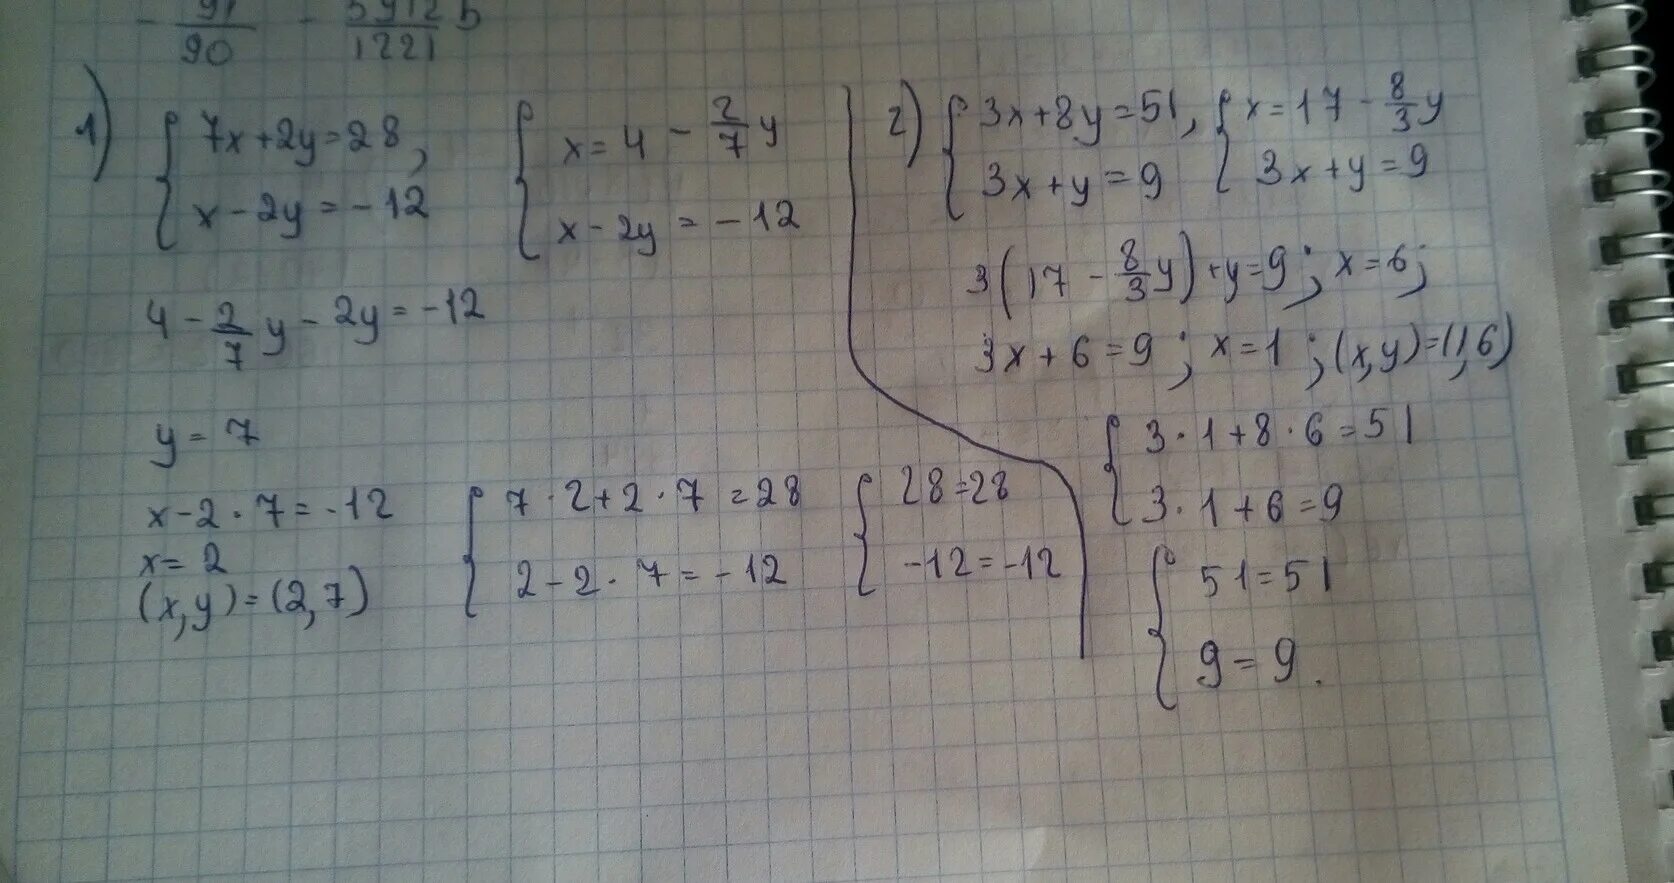 (X7+x)-(y7+y). X2 XY 28 y2 XY -12. 12x 7y 2. (7x-2)^2+28x. 2x y 12 3x y 0